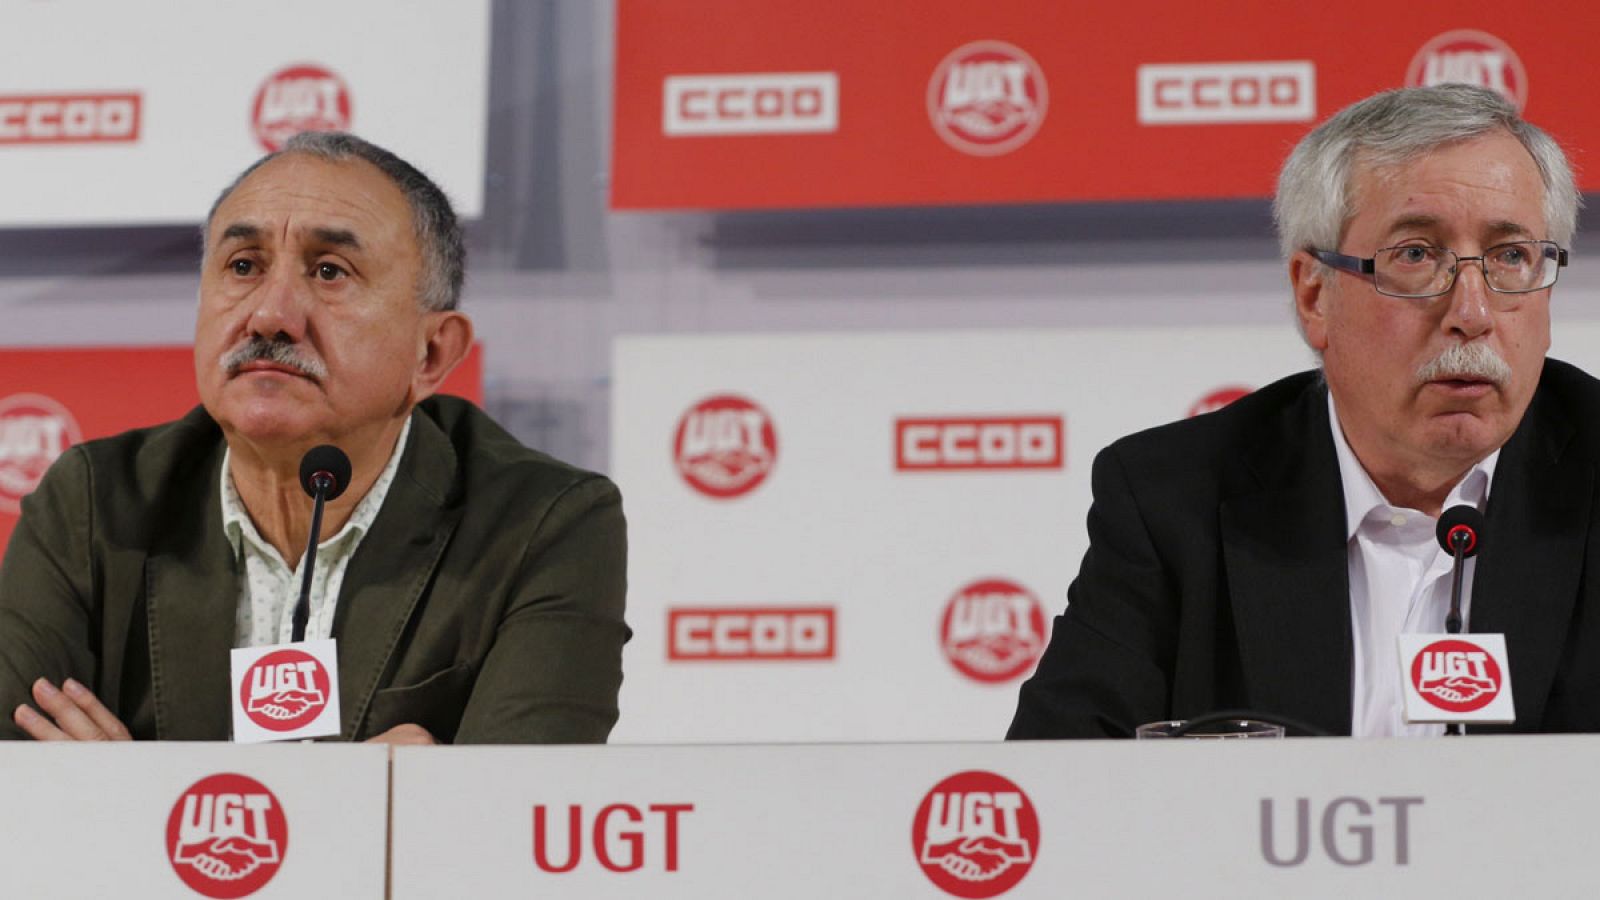 Los líderes de UGT, Pepe Alvárez, y CC.OO., Ignacio Fernández Toxo